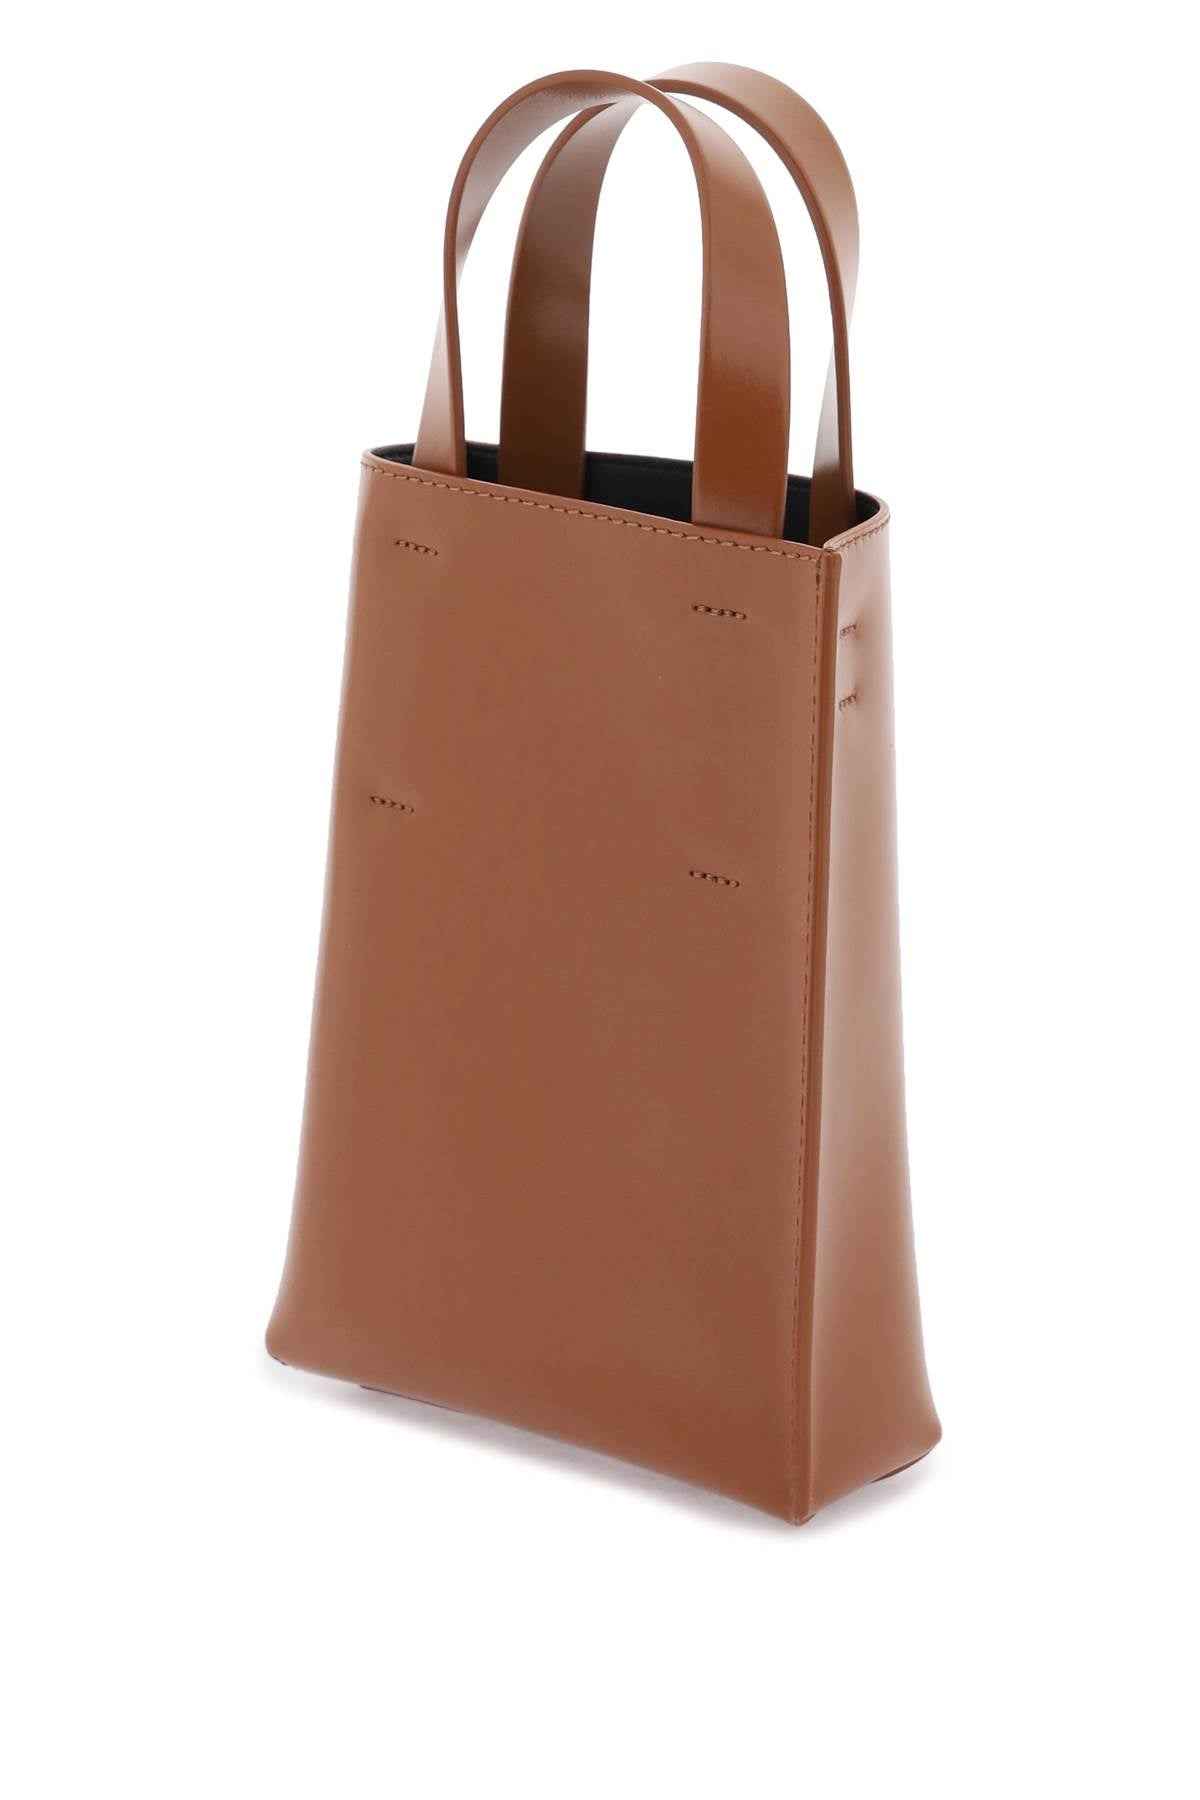 Túi xách tay NANO MUSEO trong màu nâu dành cho phụ nữ